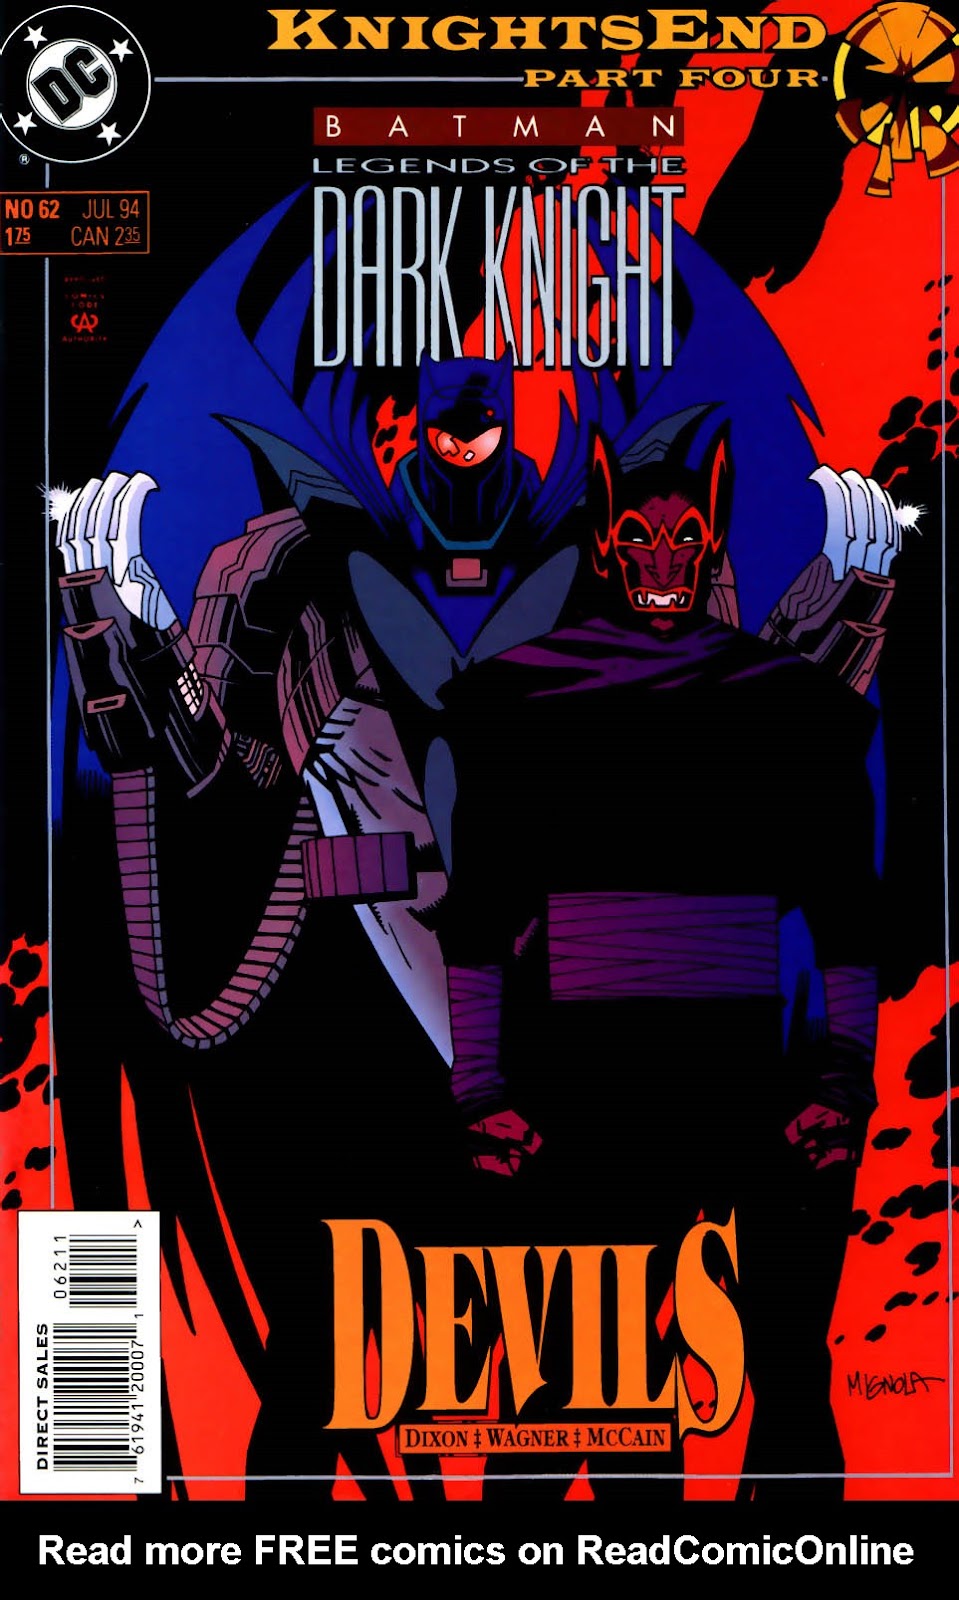 Batman Knightfall Knightsend Issue 04 | Read Batman Knightfall Knightsend  Issue 04 comic online in high quality. Read Full Comic online for free -  Read comics online in high quality .|